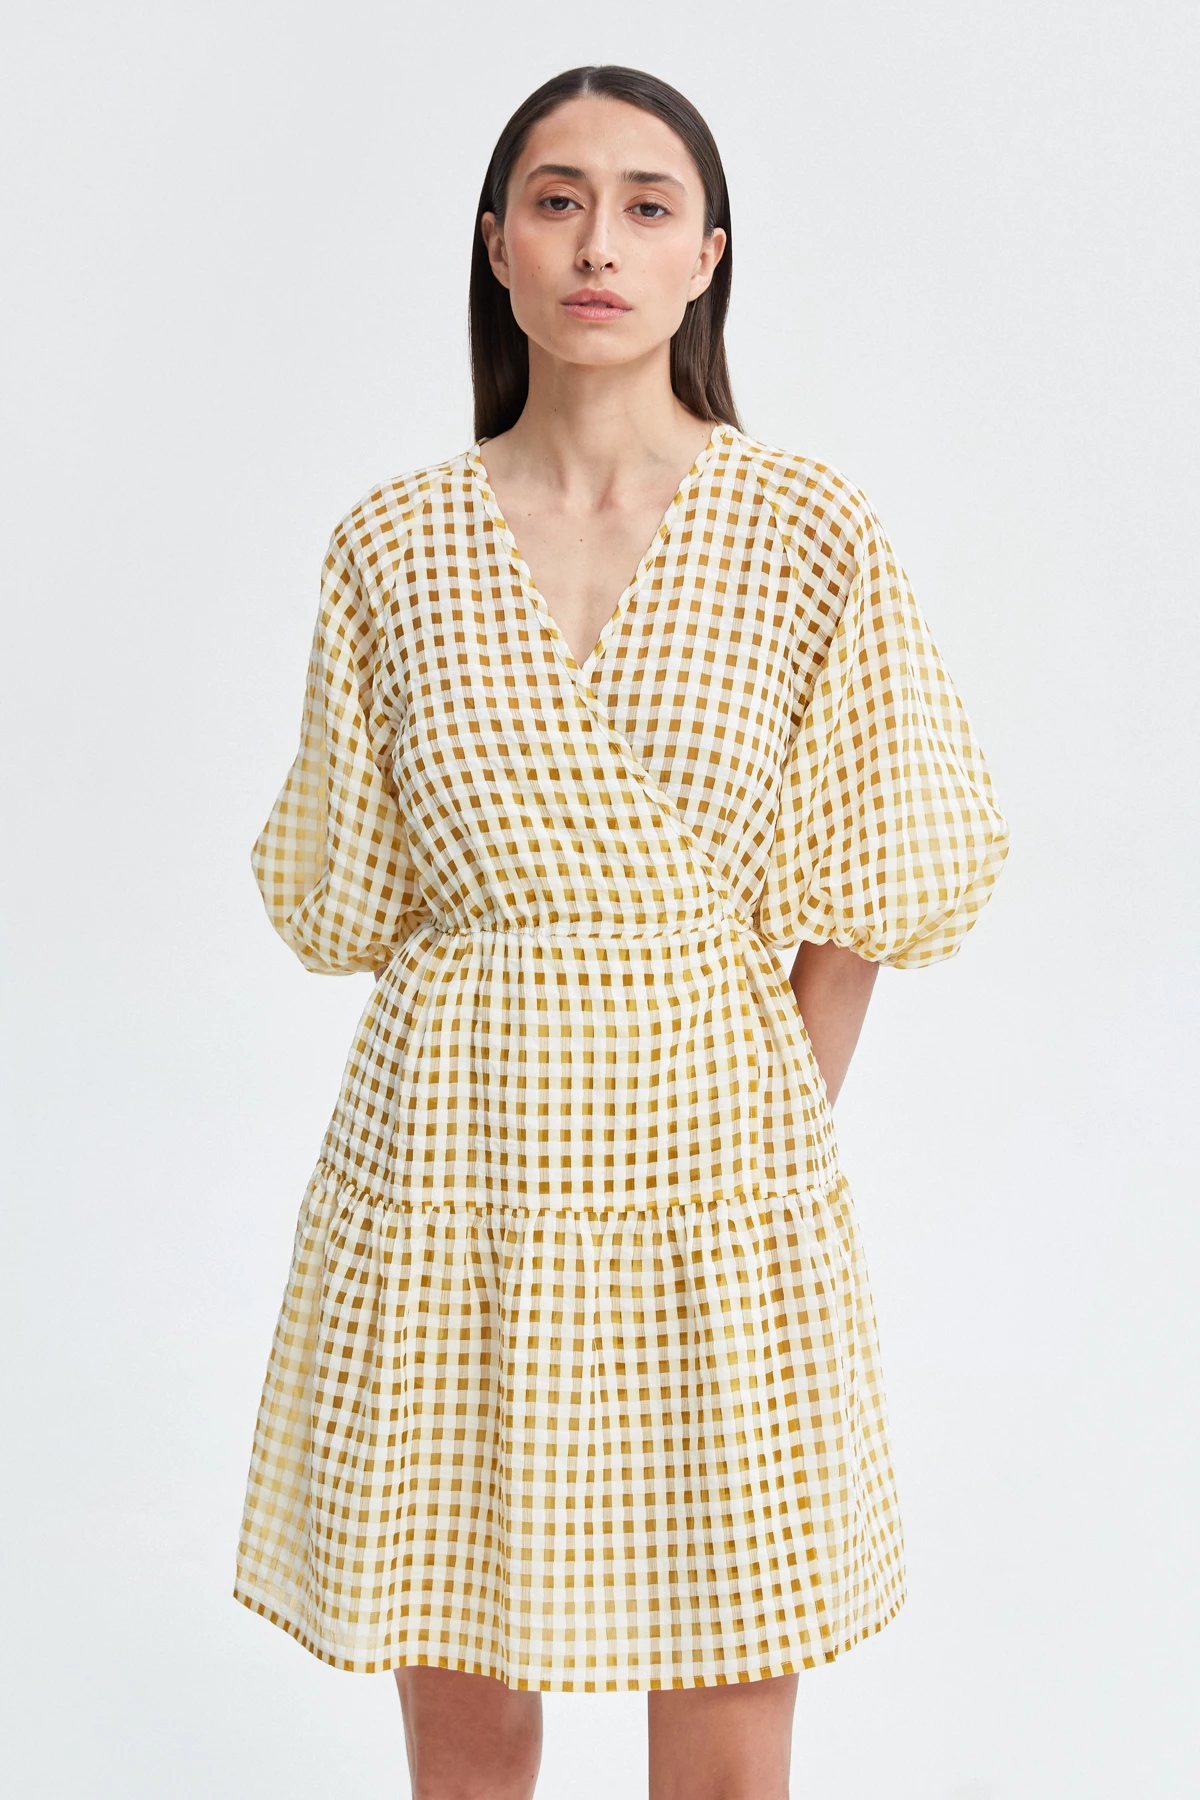 Checkered yellow chiffon dress, photo 1